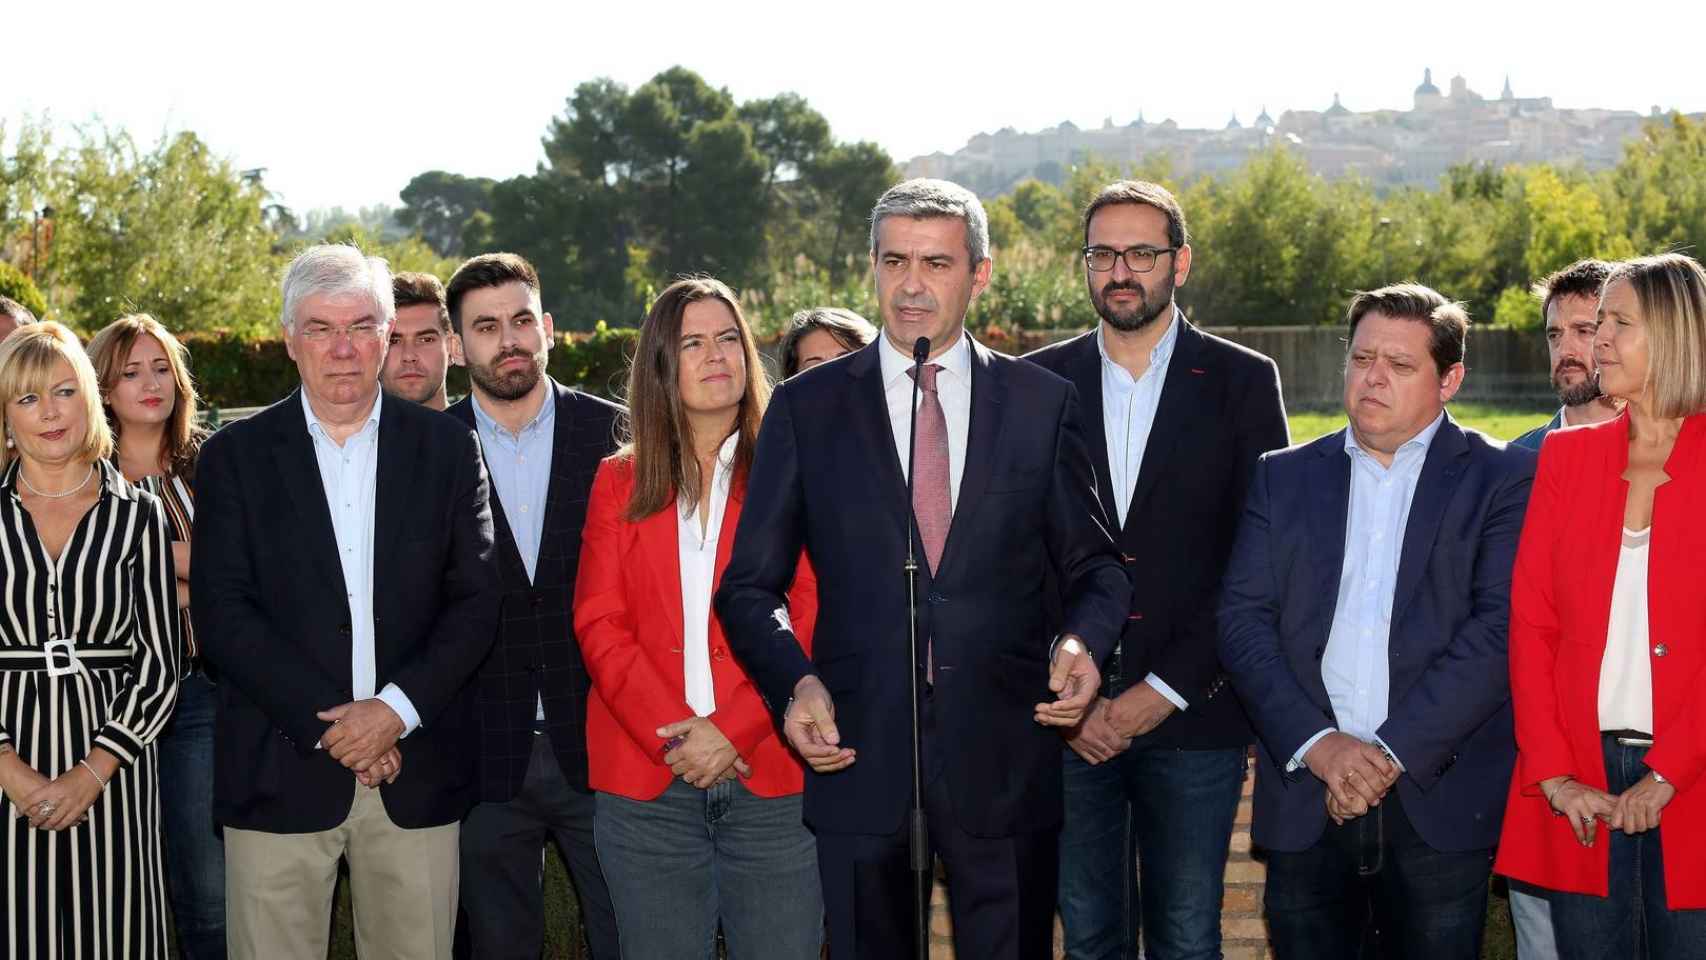 Presentación de la candidatura del PSOE en Toledo. Foto: Óscar Huertas